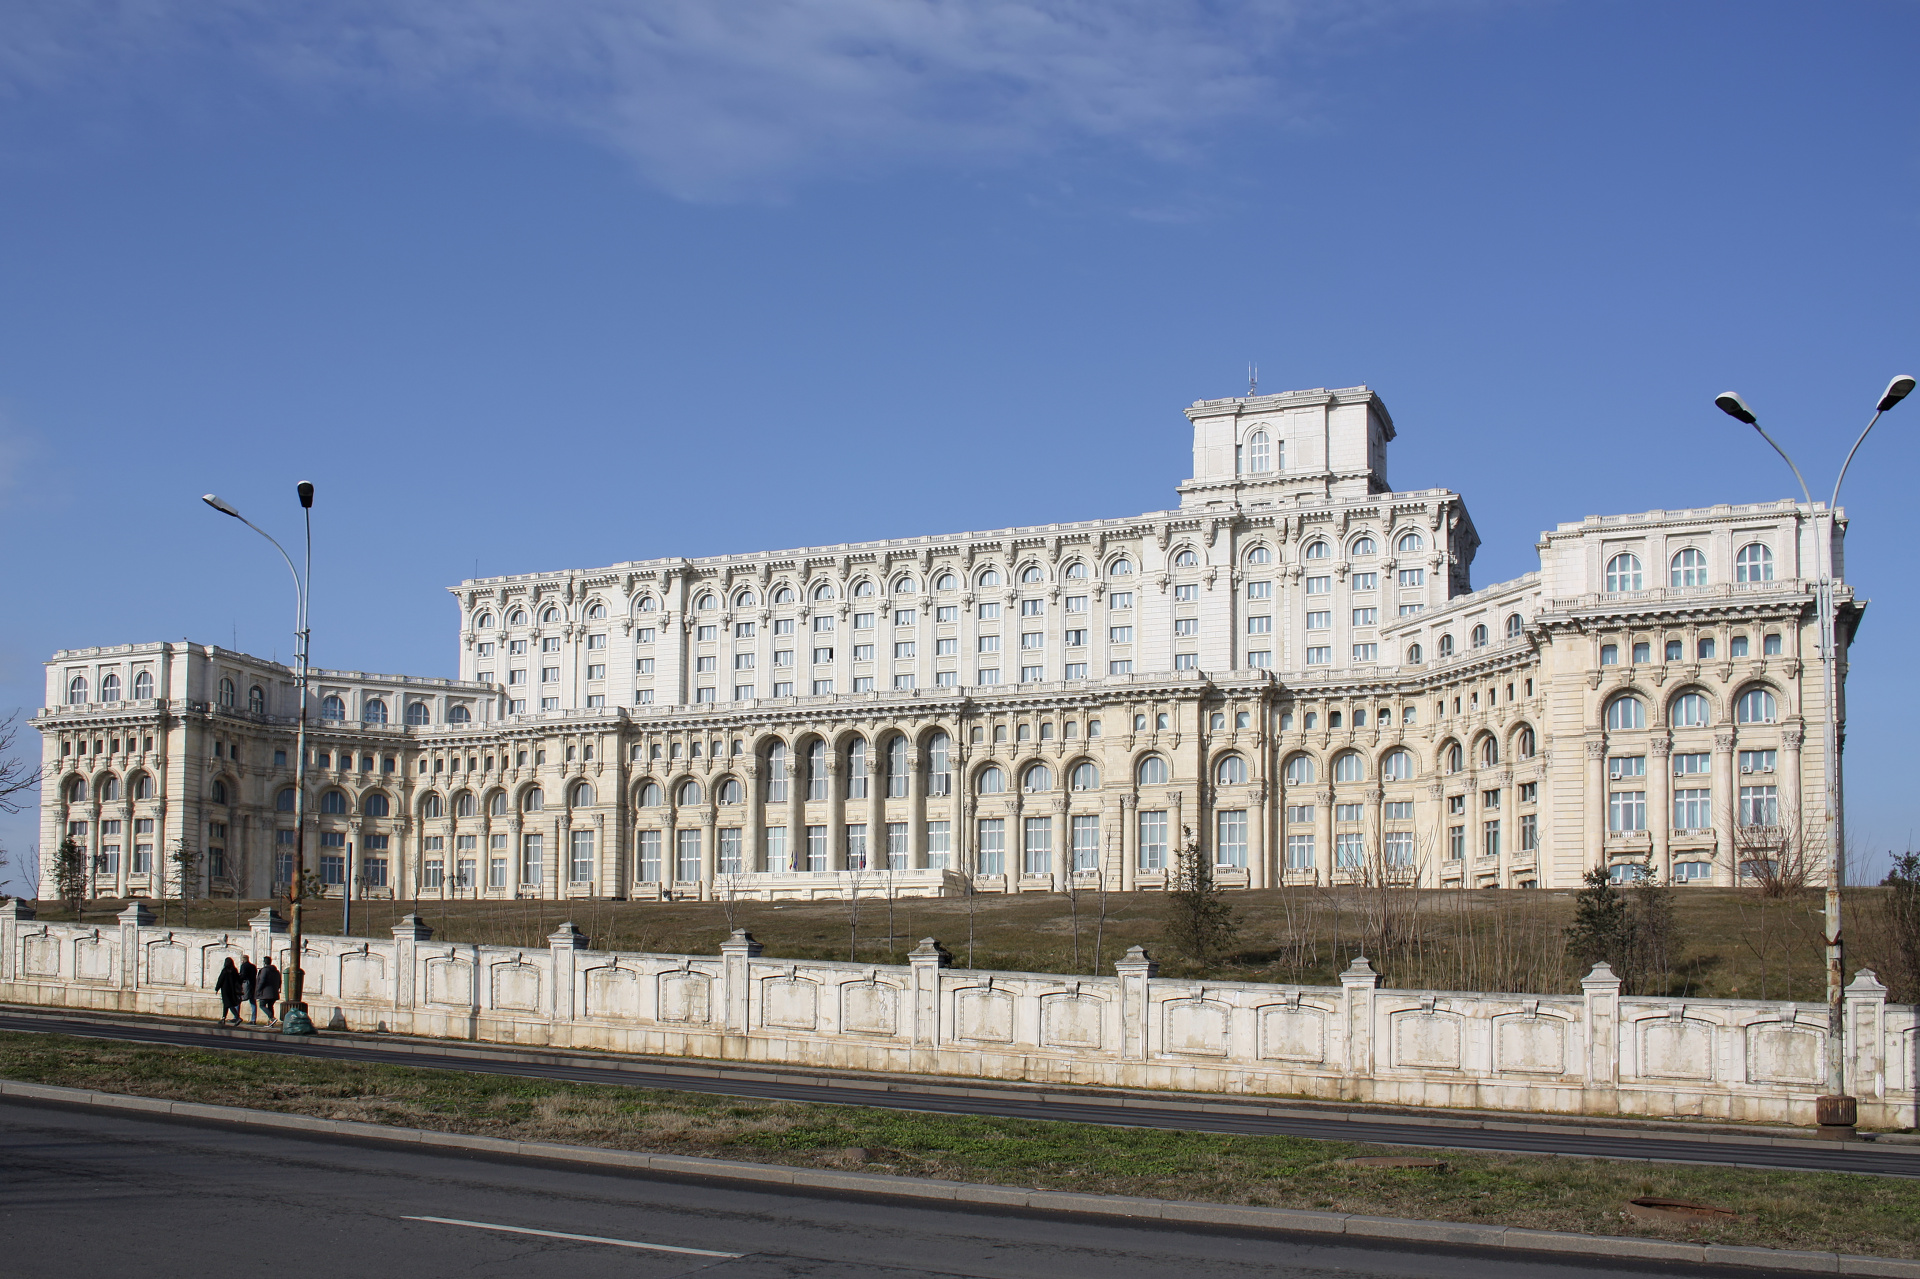 Palatul Parlamentului - Pałac Parlamentu (Podróże » Bukareszt)